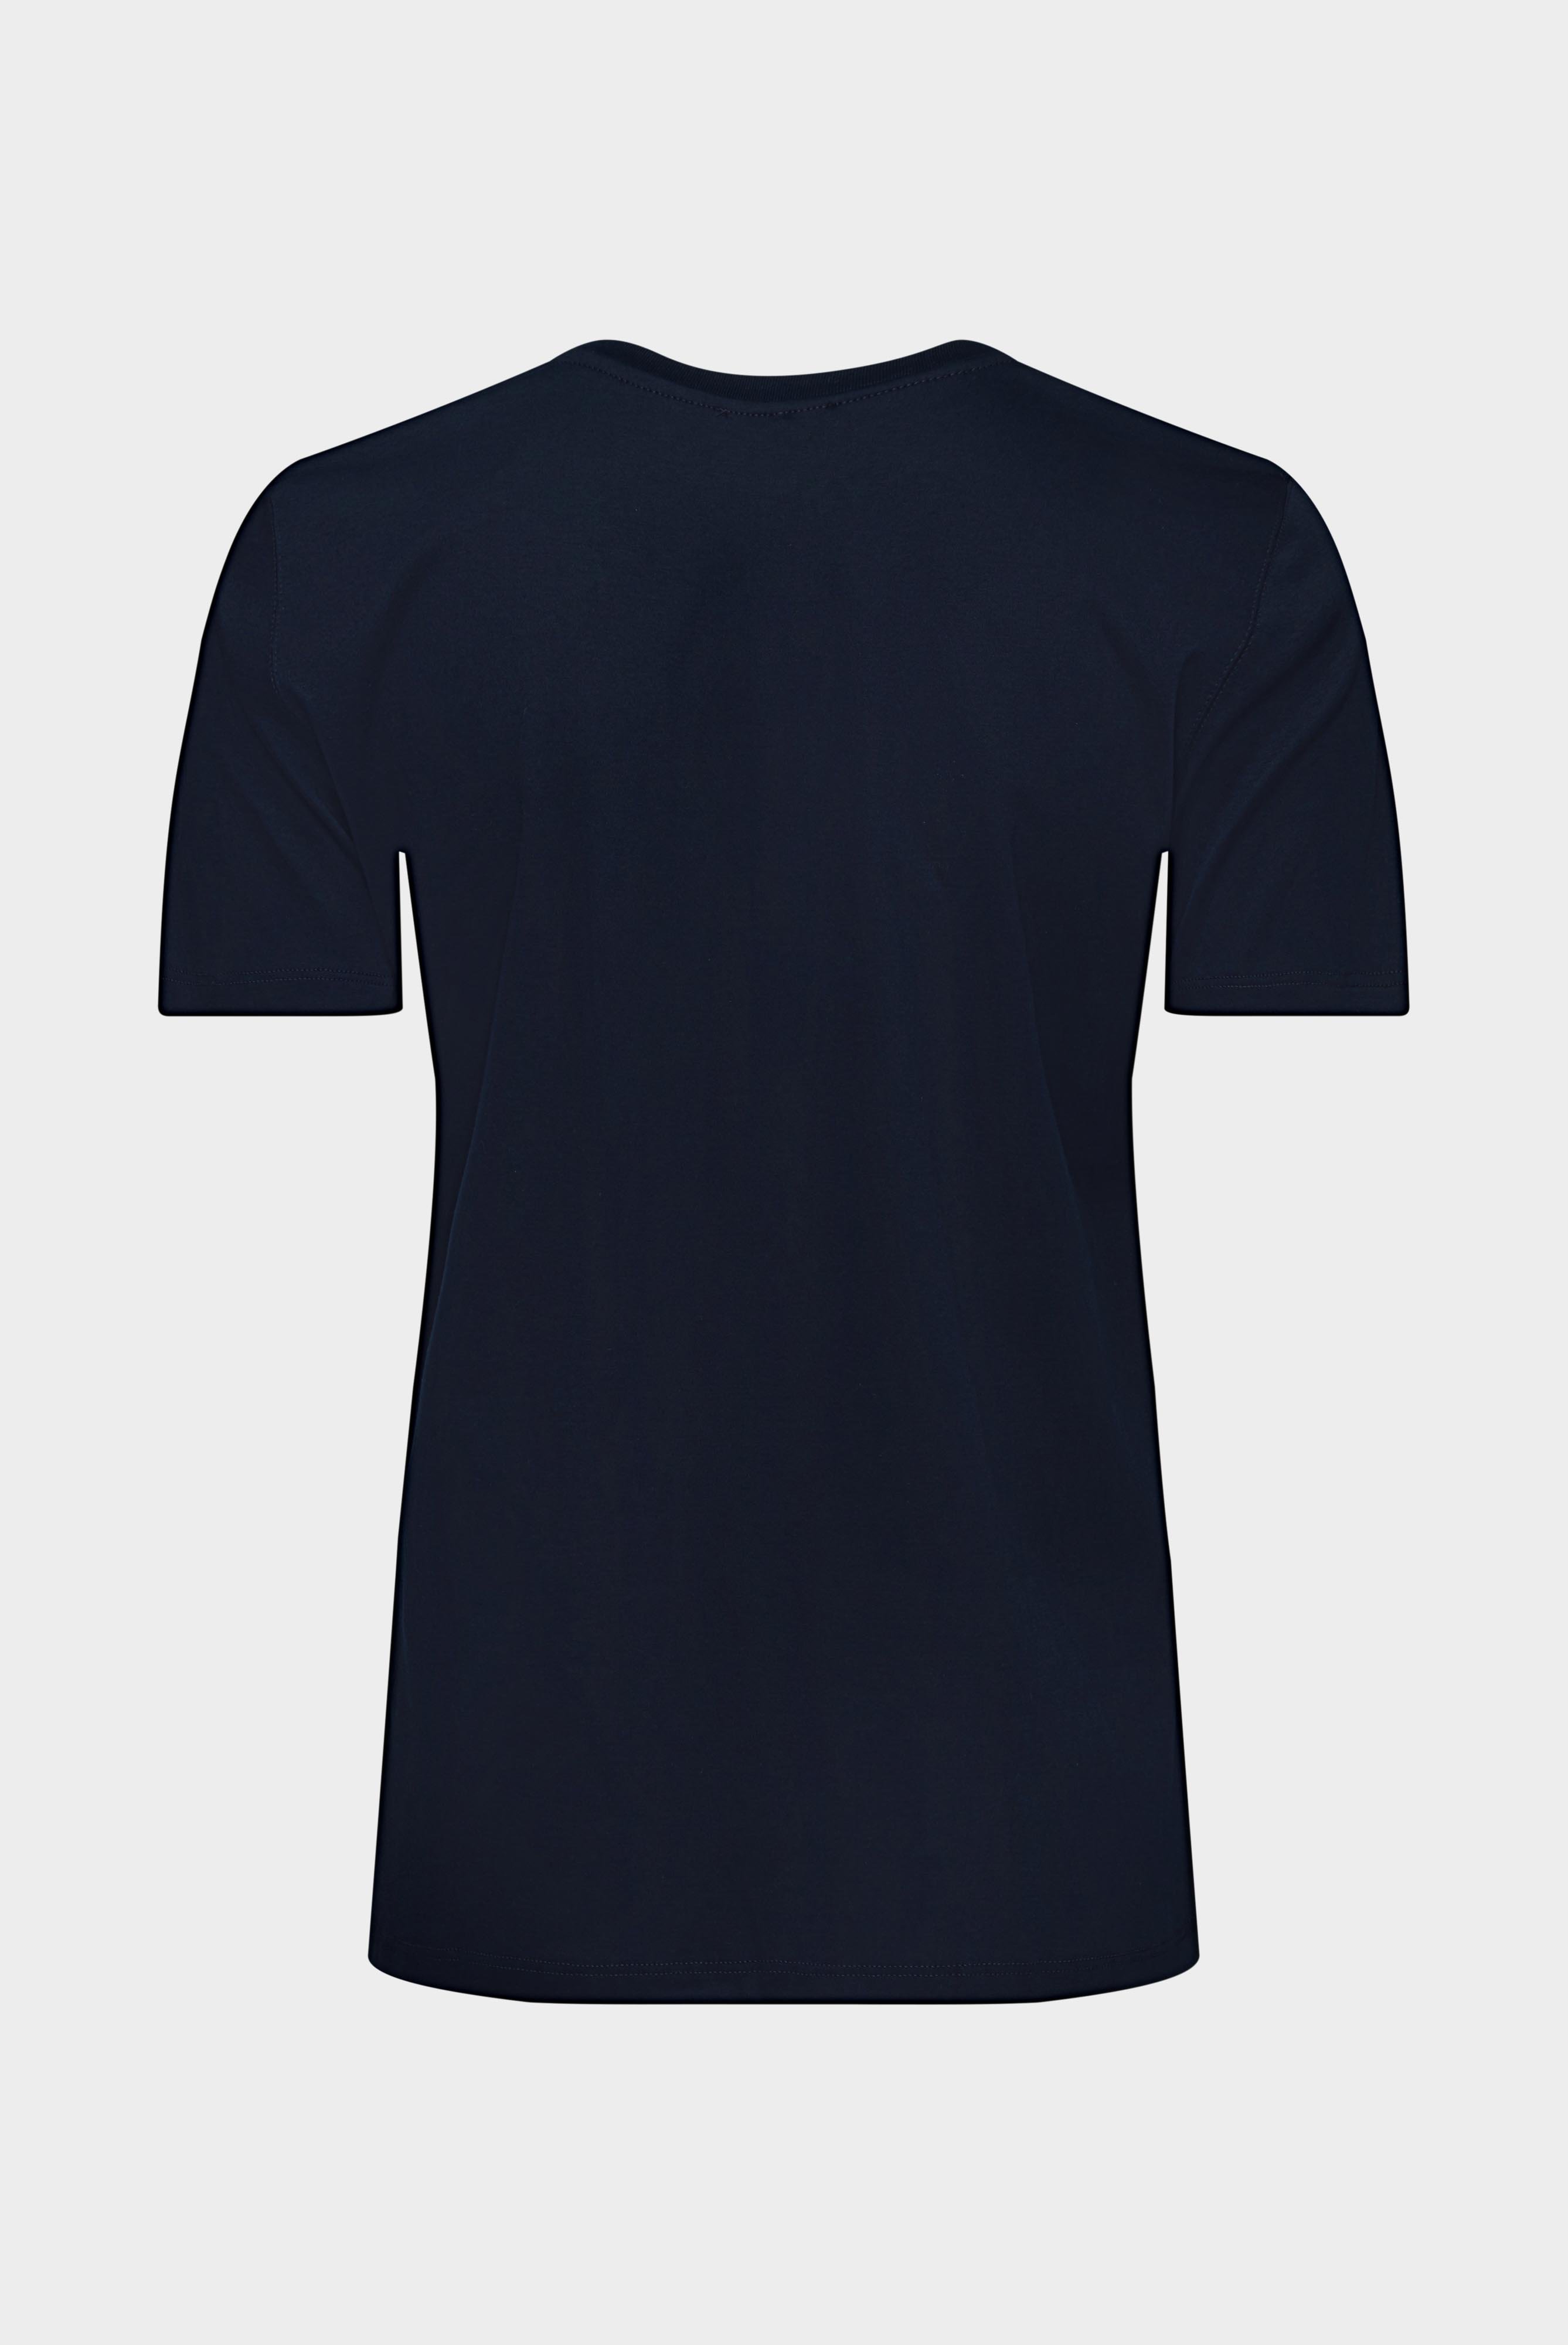 Tops & T-Shirts+Jersey T-Shirt+05.6384.18.180031.790.42